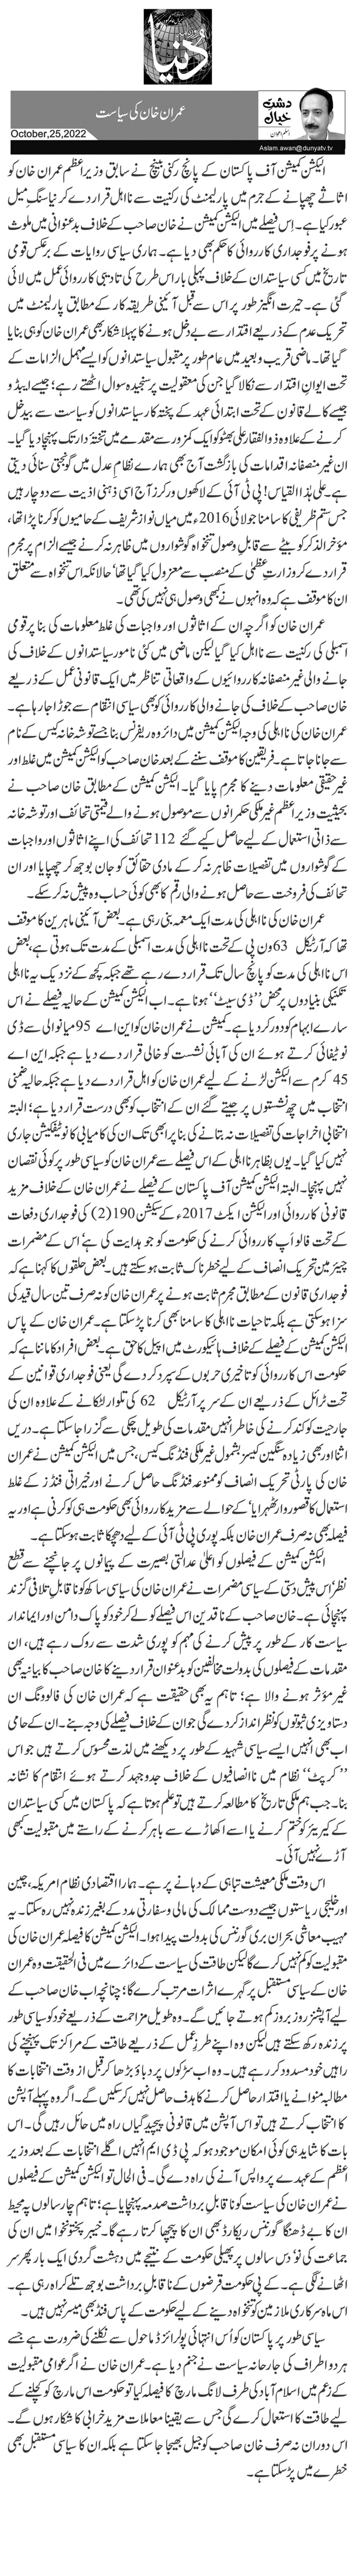  عمران خان کی سیاست